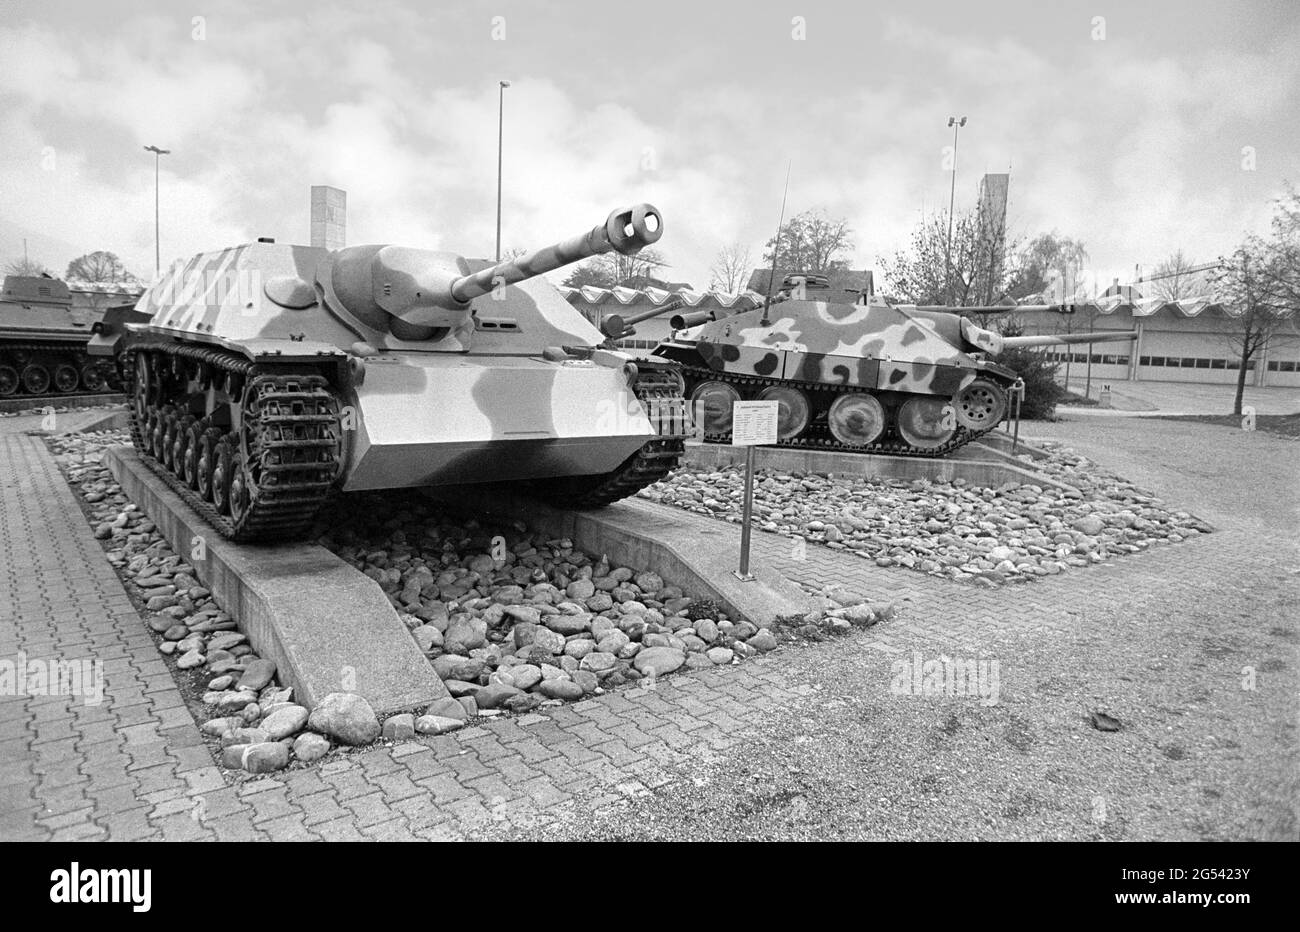 Die Schweiz, das Panzermuseum in Thun (Bern), die deutschen  Panzerabwehrkanonen Jagdpanzer IV und Jagdpanzer 38(t) Hetzer  Stockfotografie - Alamy